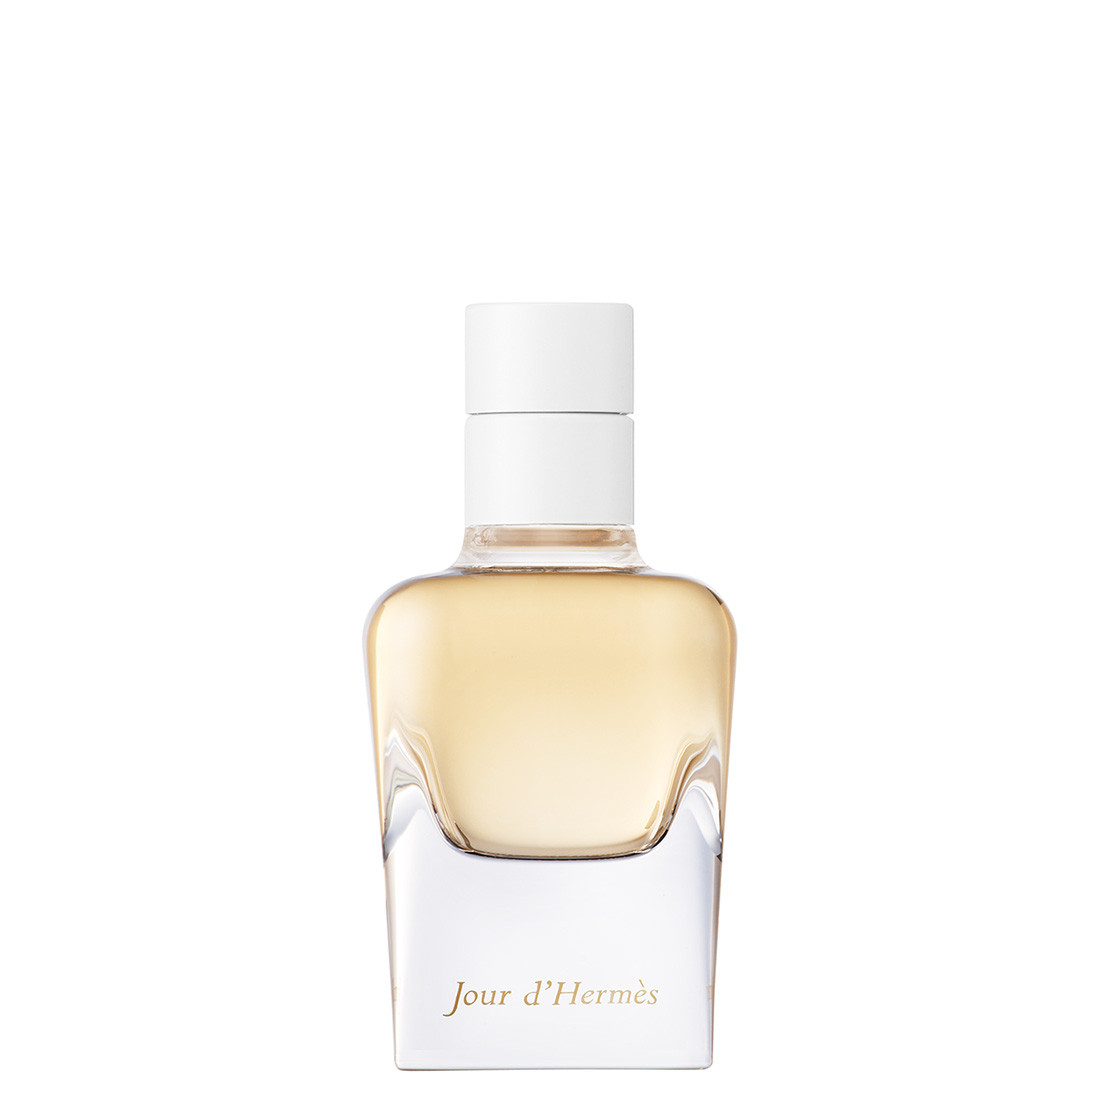 HERMÈS - Jour d'Hermès Refillable Eau de Parfum - 30 ml